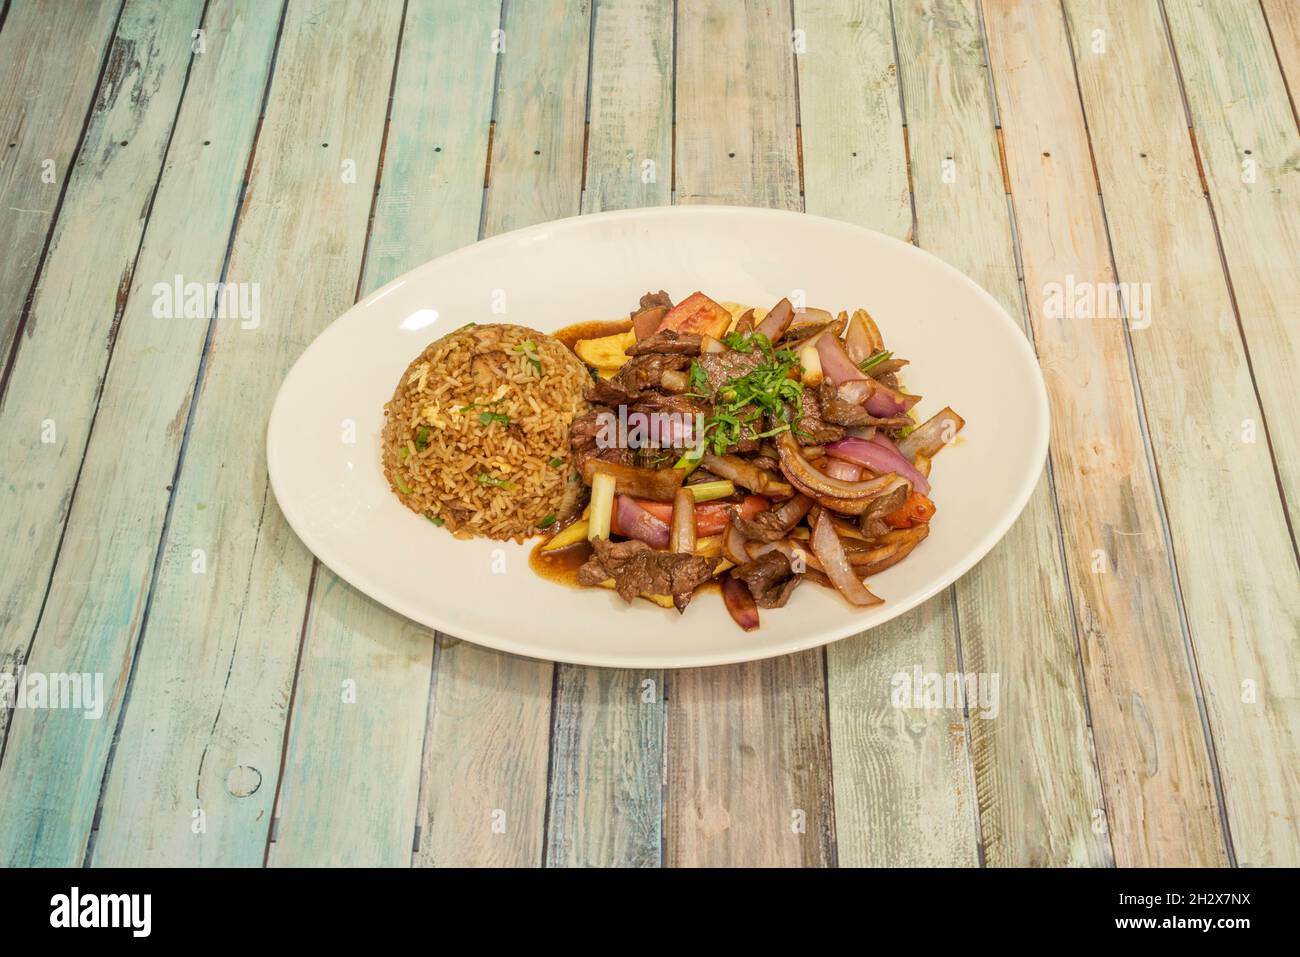 Bandeja de recetas de lomo saltado peruano con arroz chaufa, verduras, cebolla roja y perejil Foto de stock